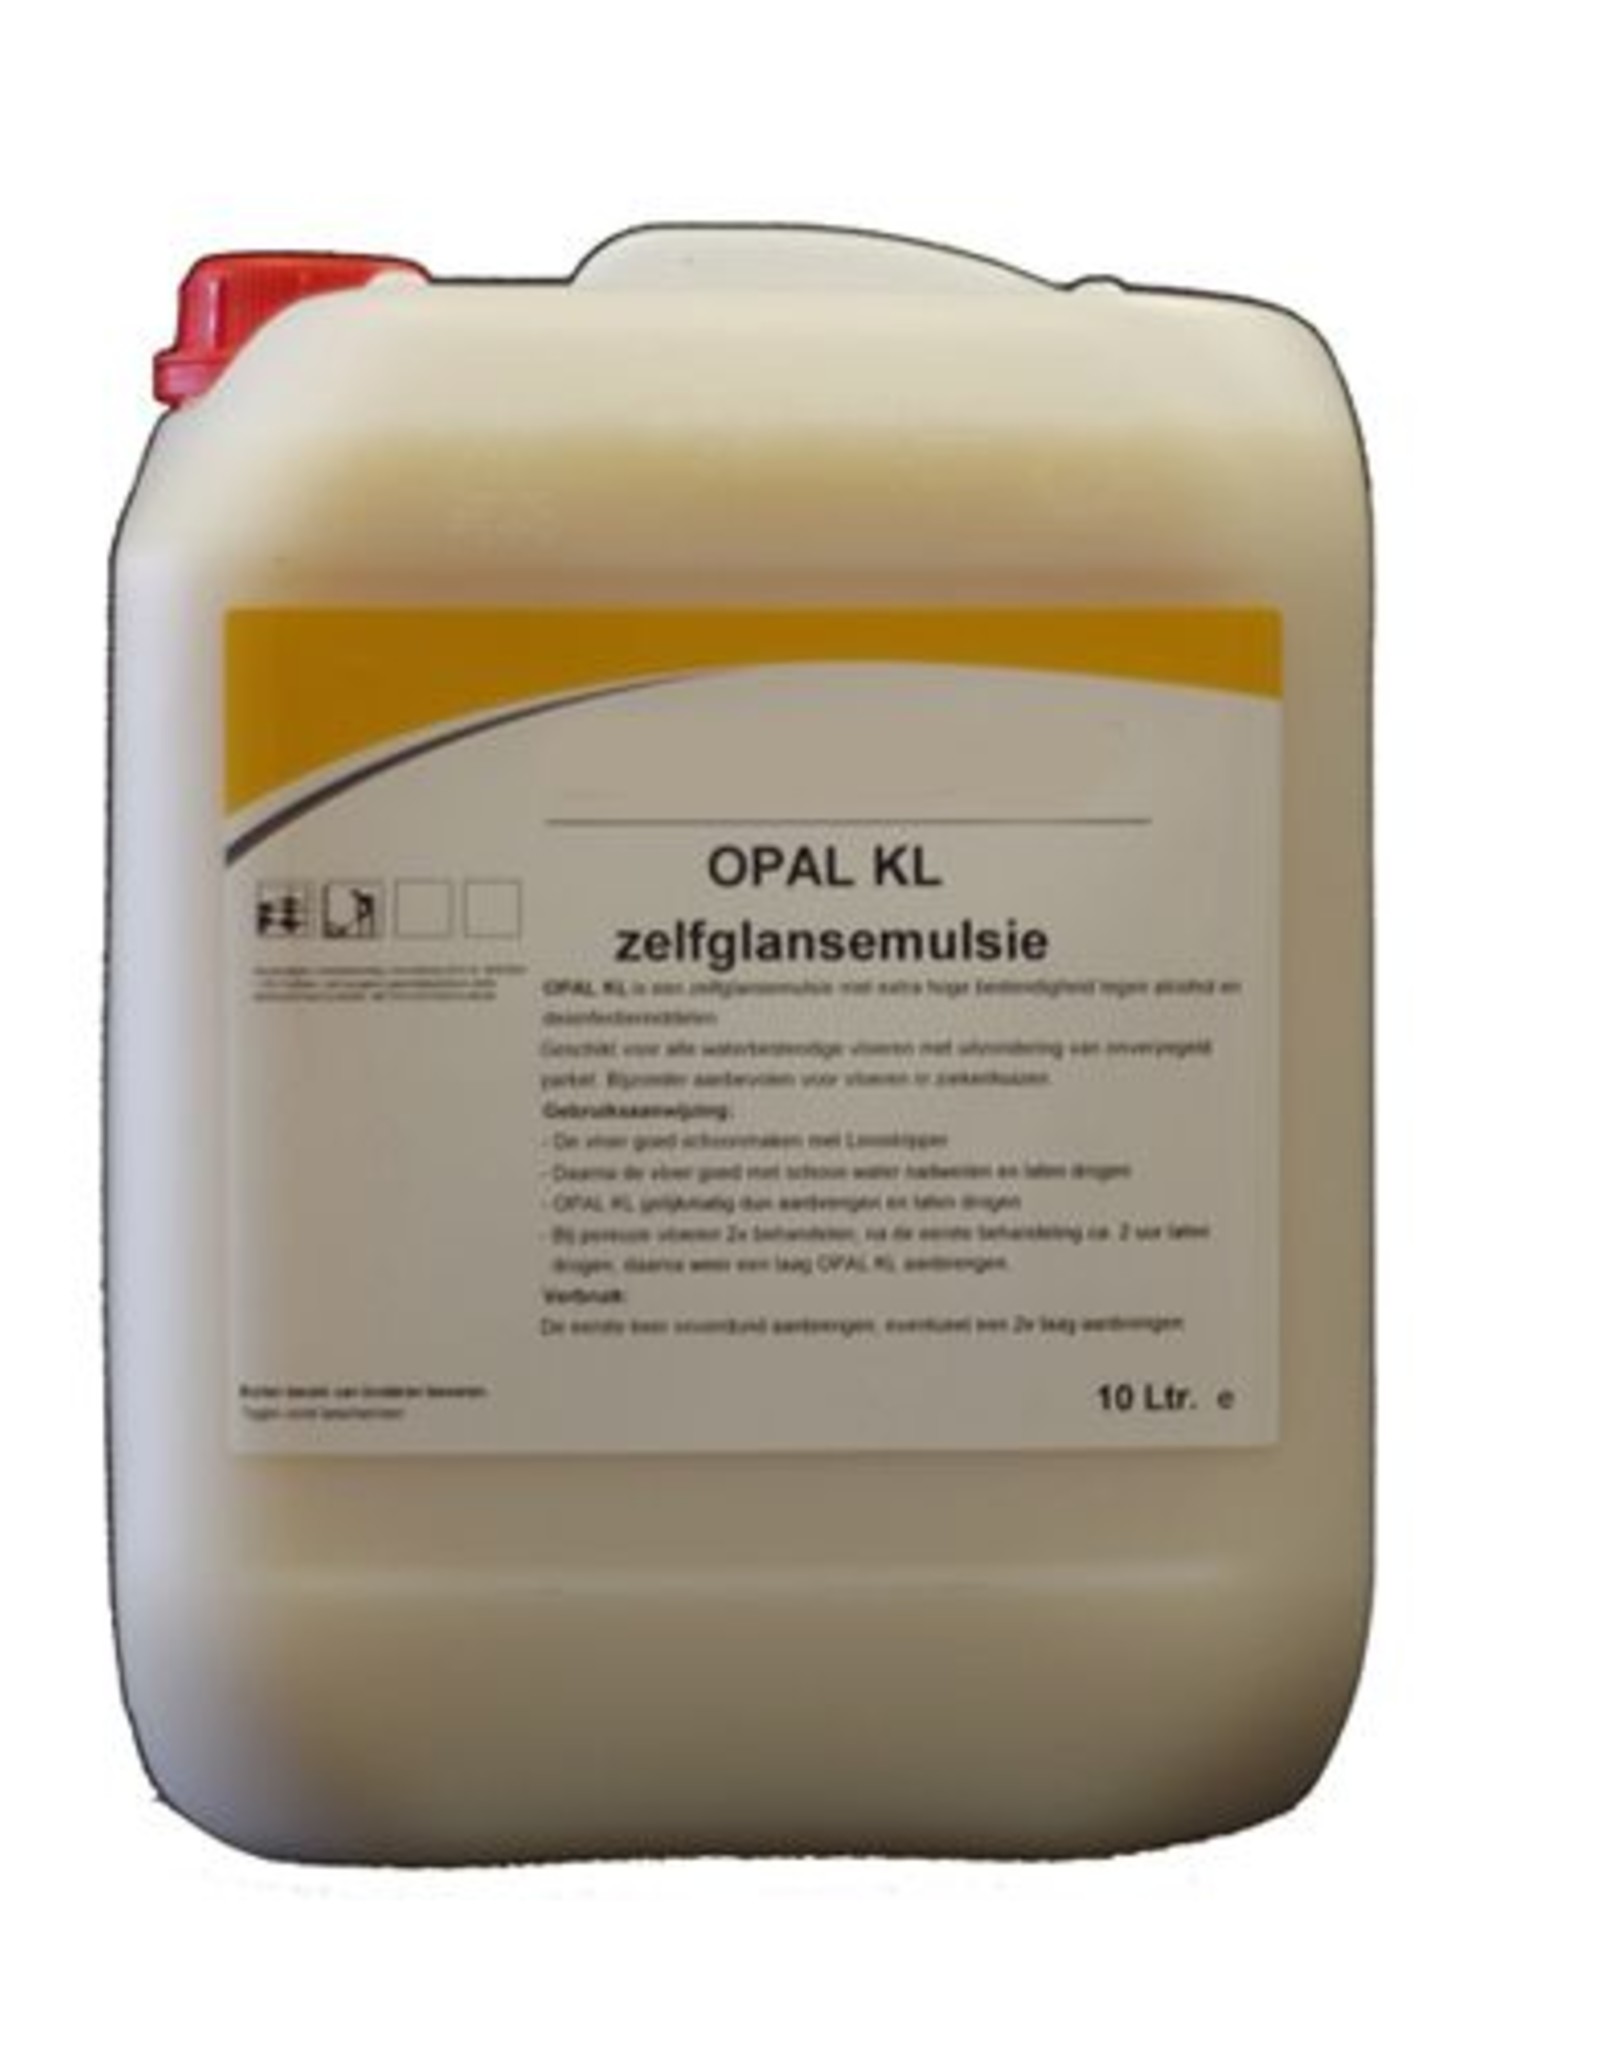 Opal Zelfglansemulsie Opal KL 10 ltr. Voor glans en bescherming tegen alcohol en desinfectie middel.